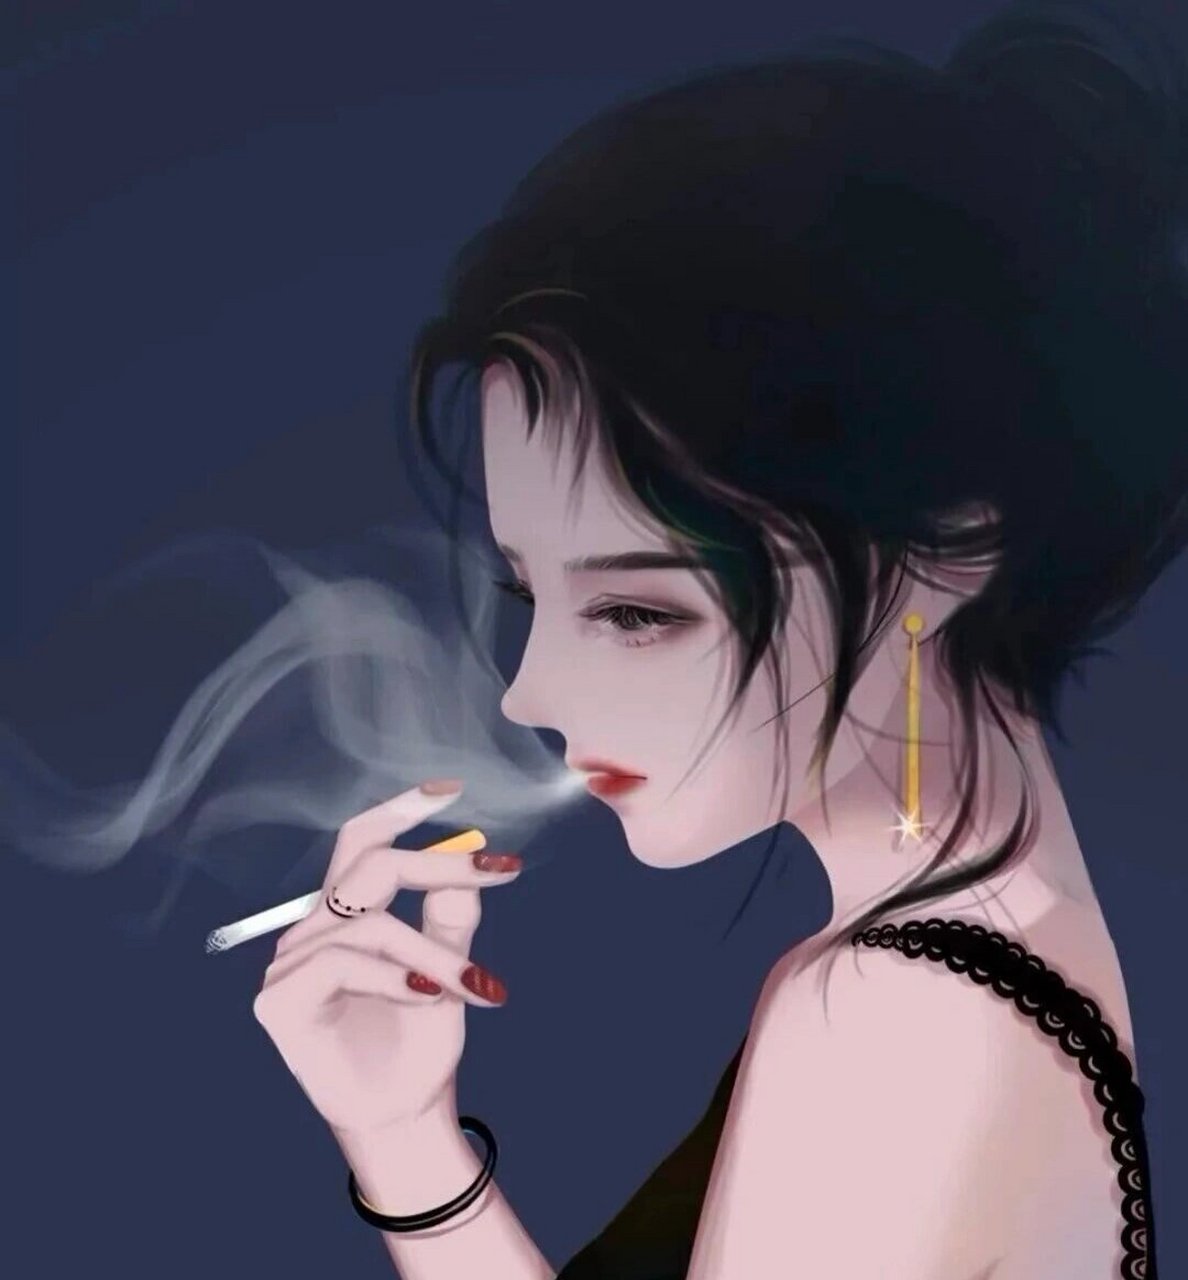 叼根烟的女生动漫头像图片